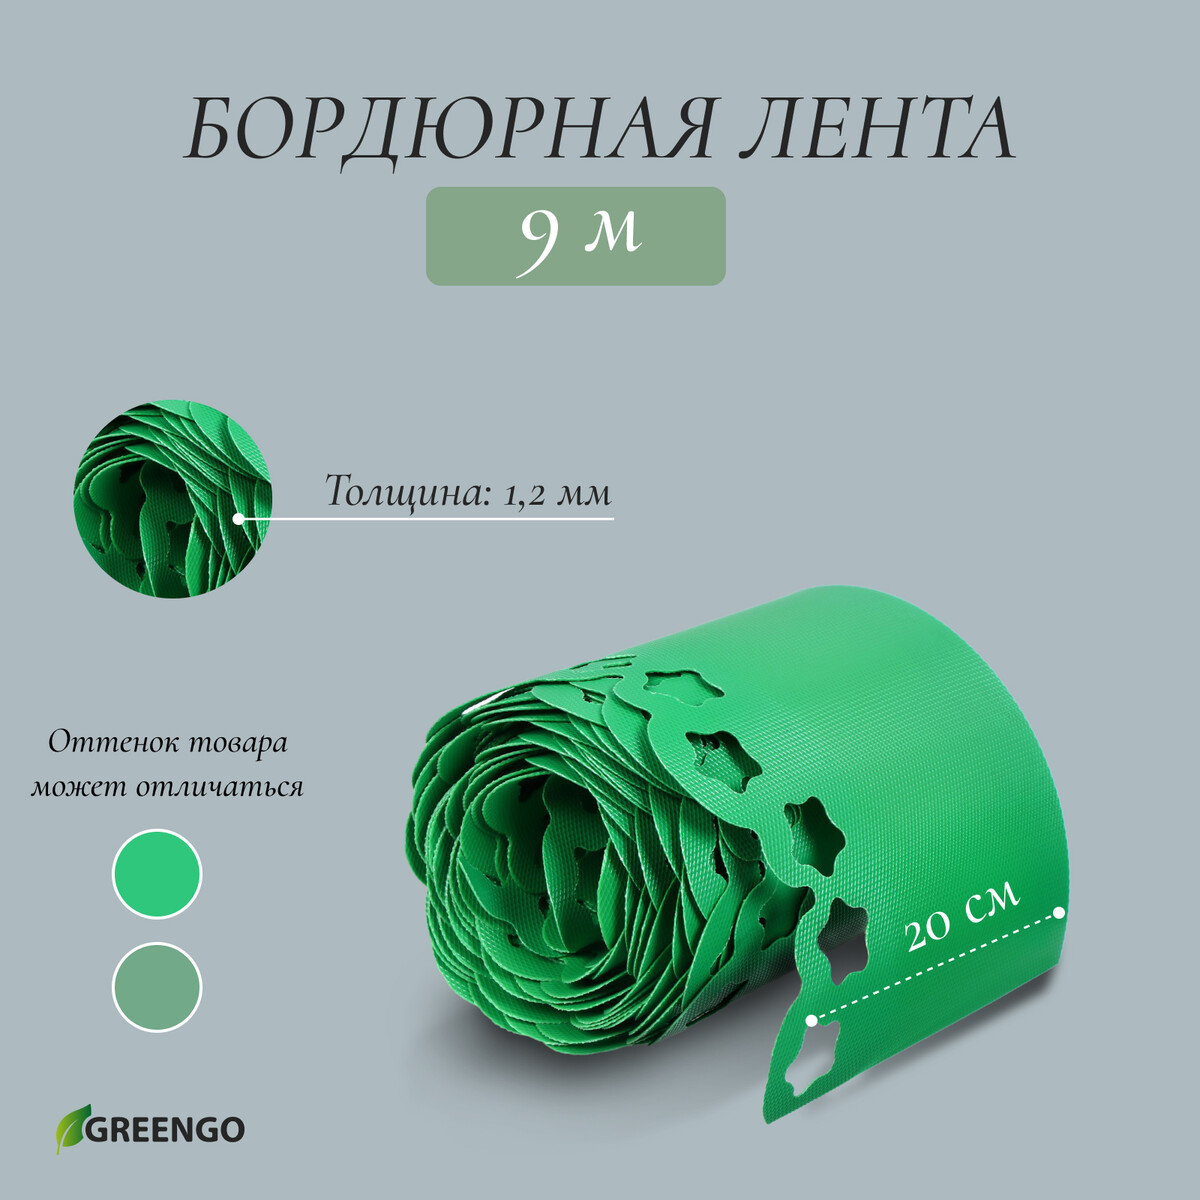 Лента бордюрная, 0.2 × 9 м, толщина 1.2 мм, пластиковая, фигурная, зеленая, greengo